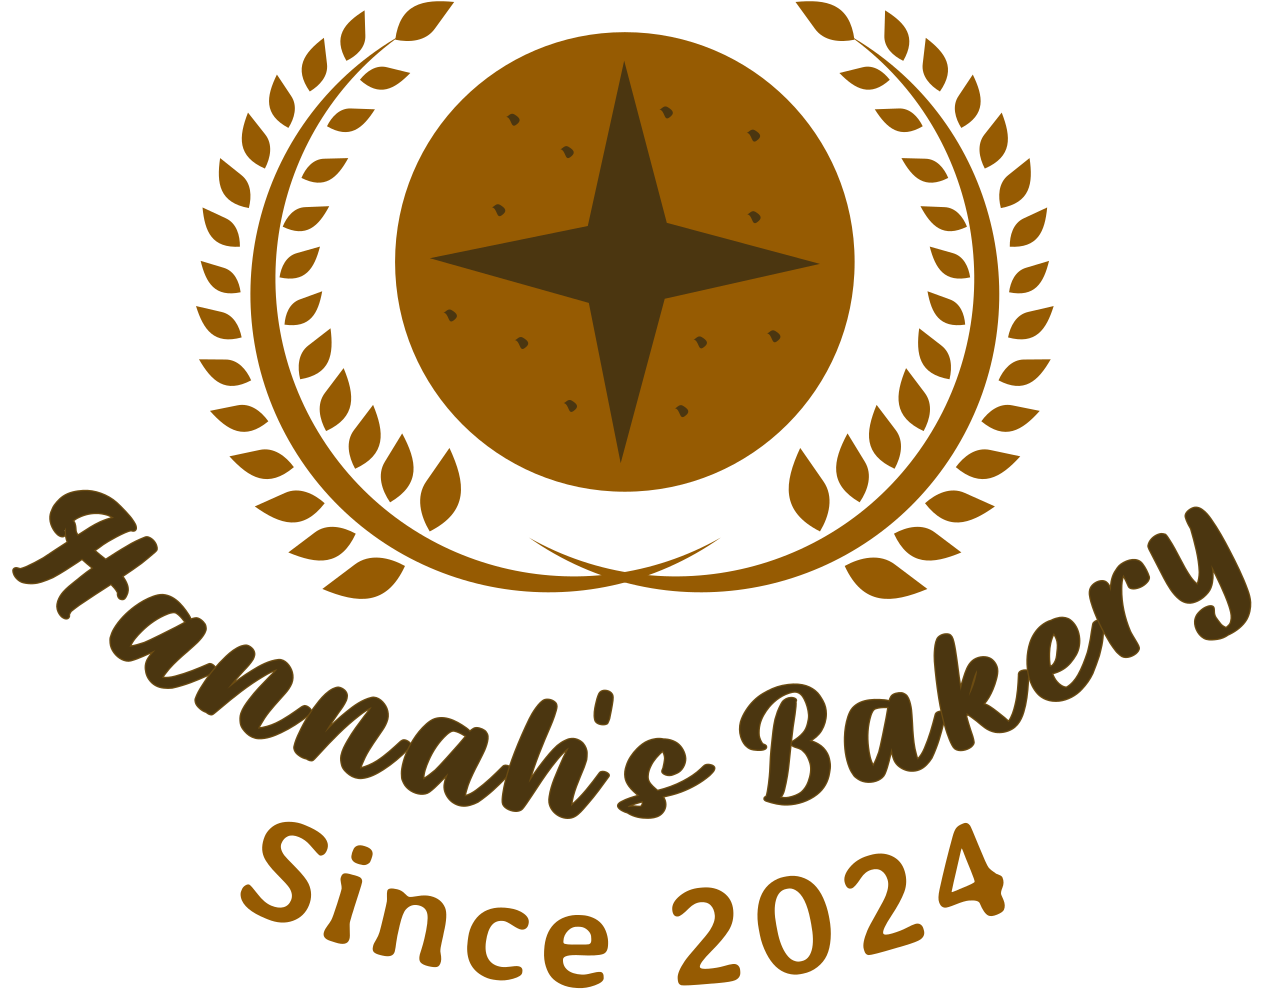 Hannah's Bakery's logo